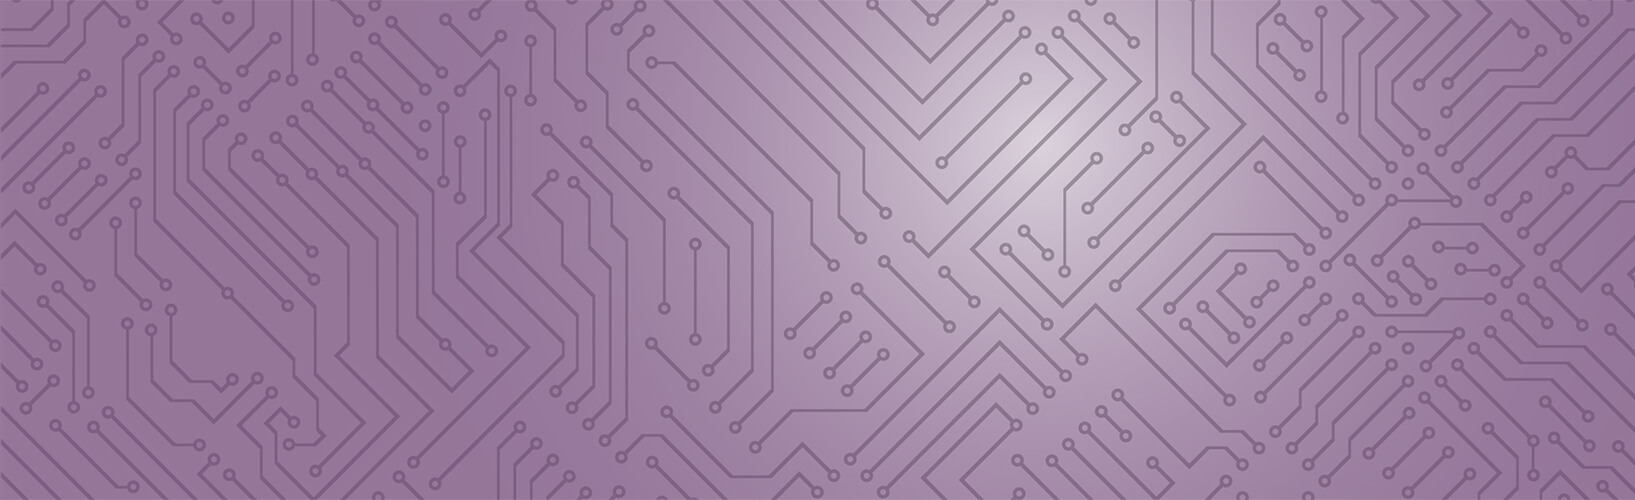 purple circuit board pattern